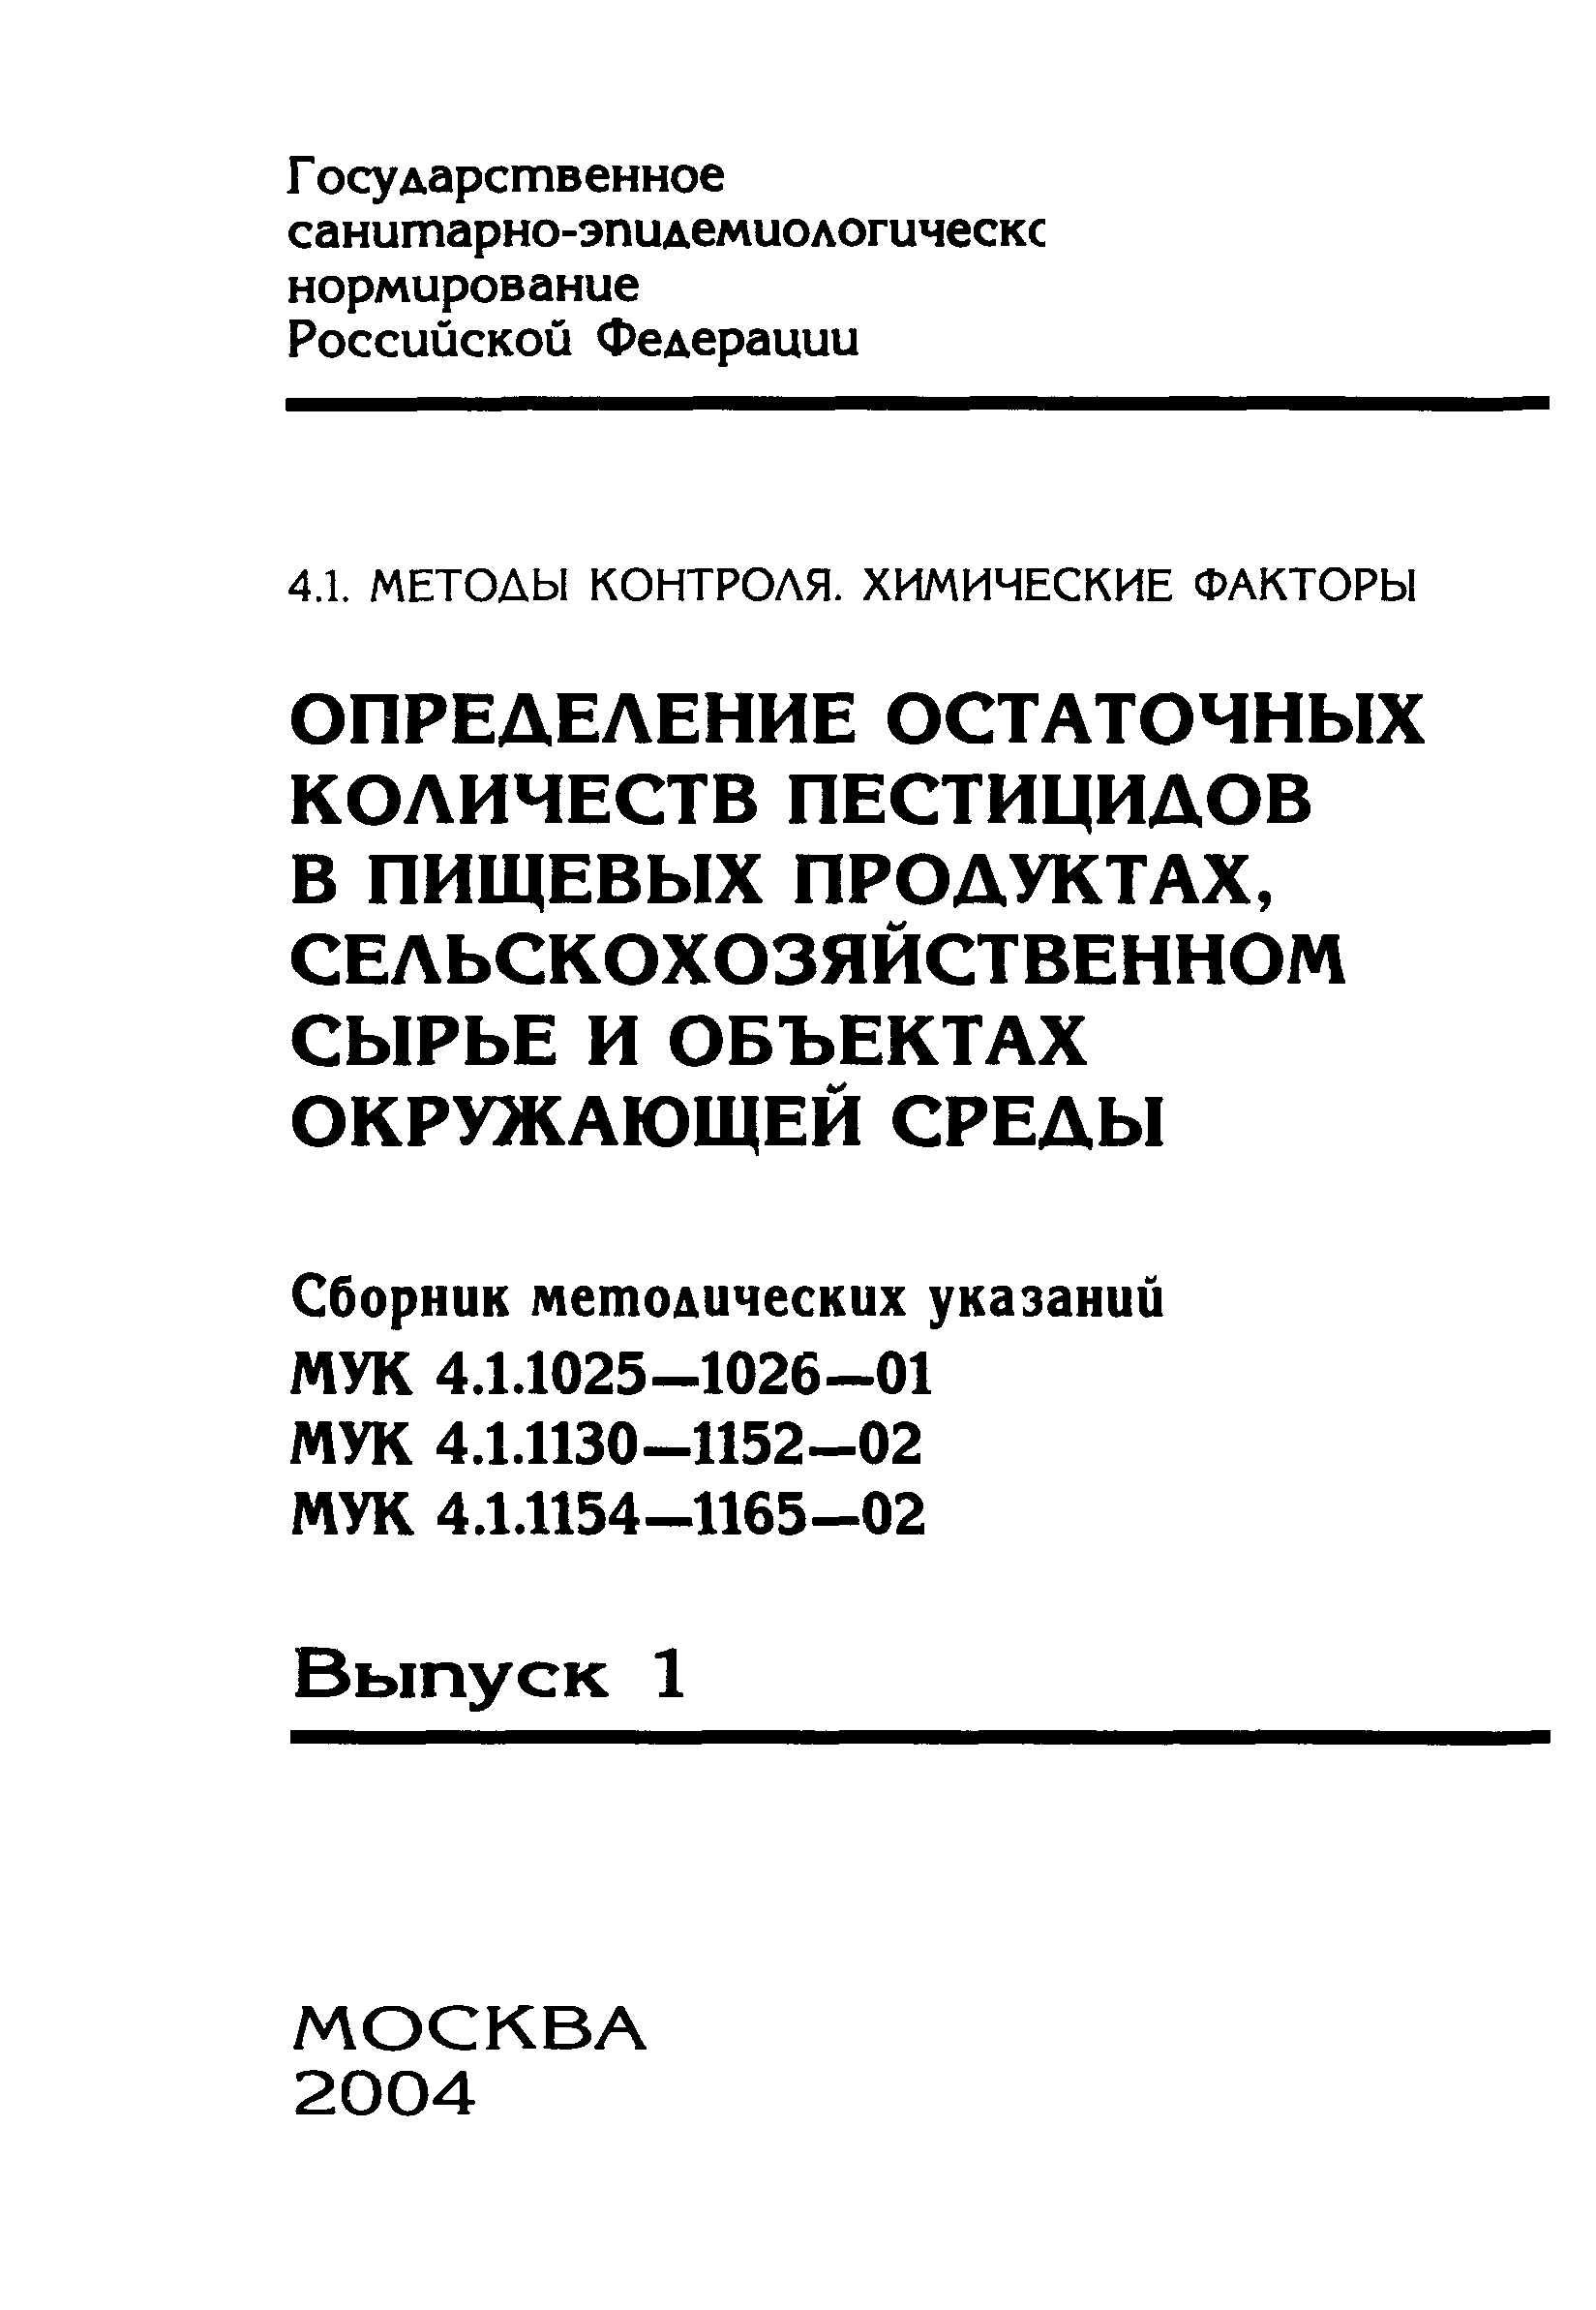 МУК 4.1.1147-02